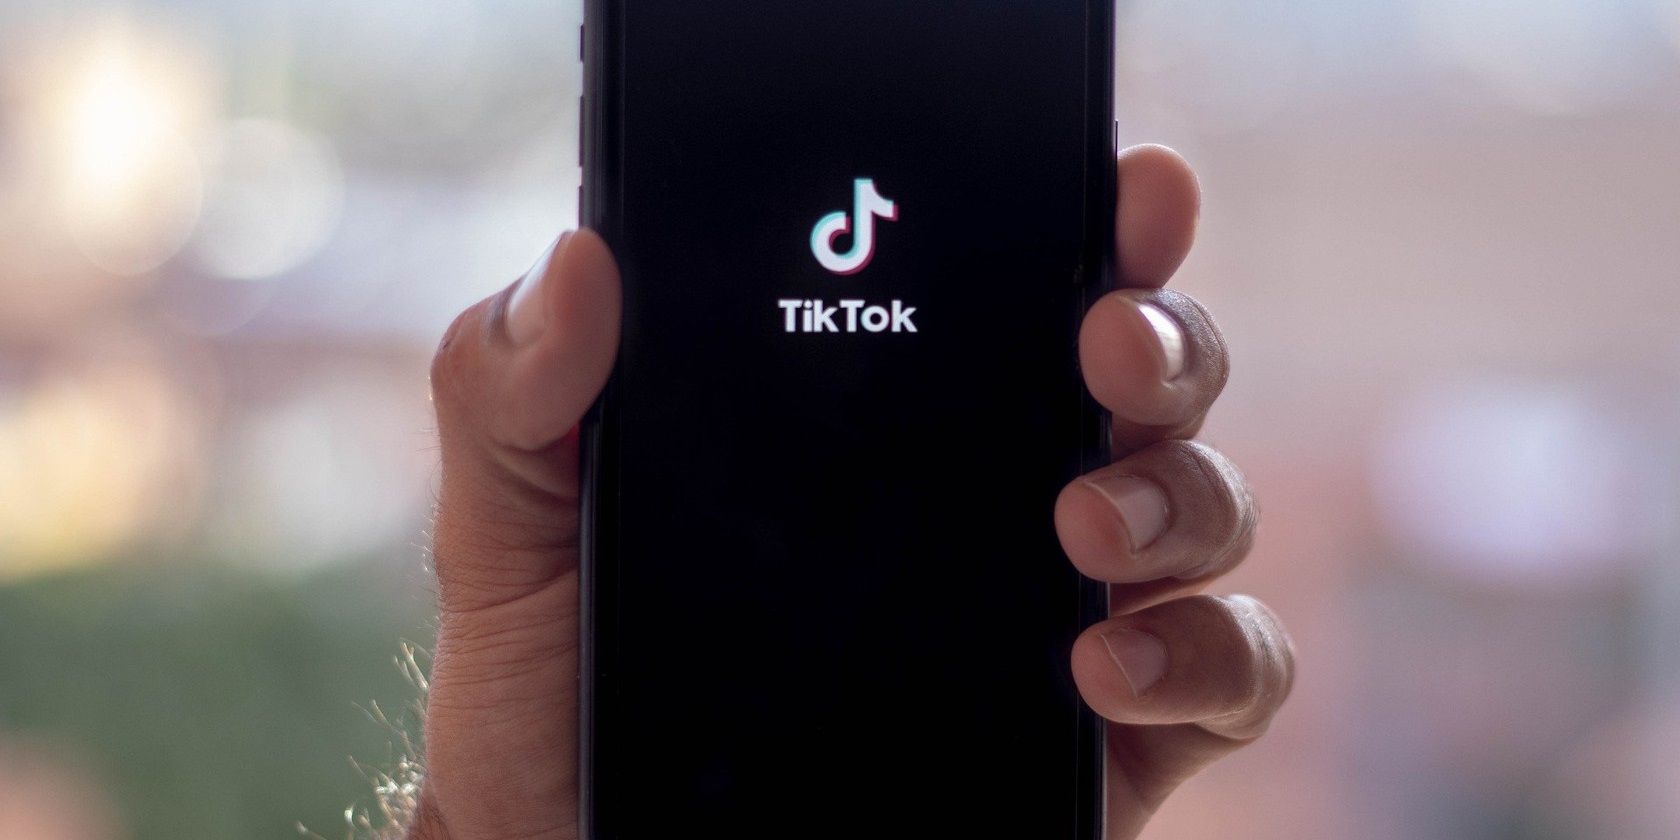 Main tenant un smartphone avec TikTok écrit dessus.